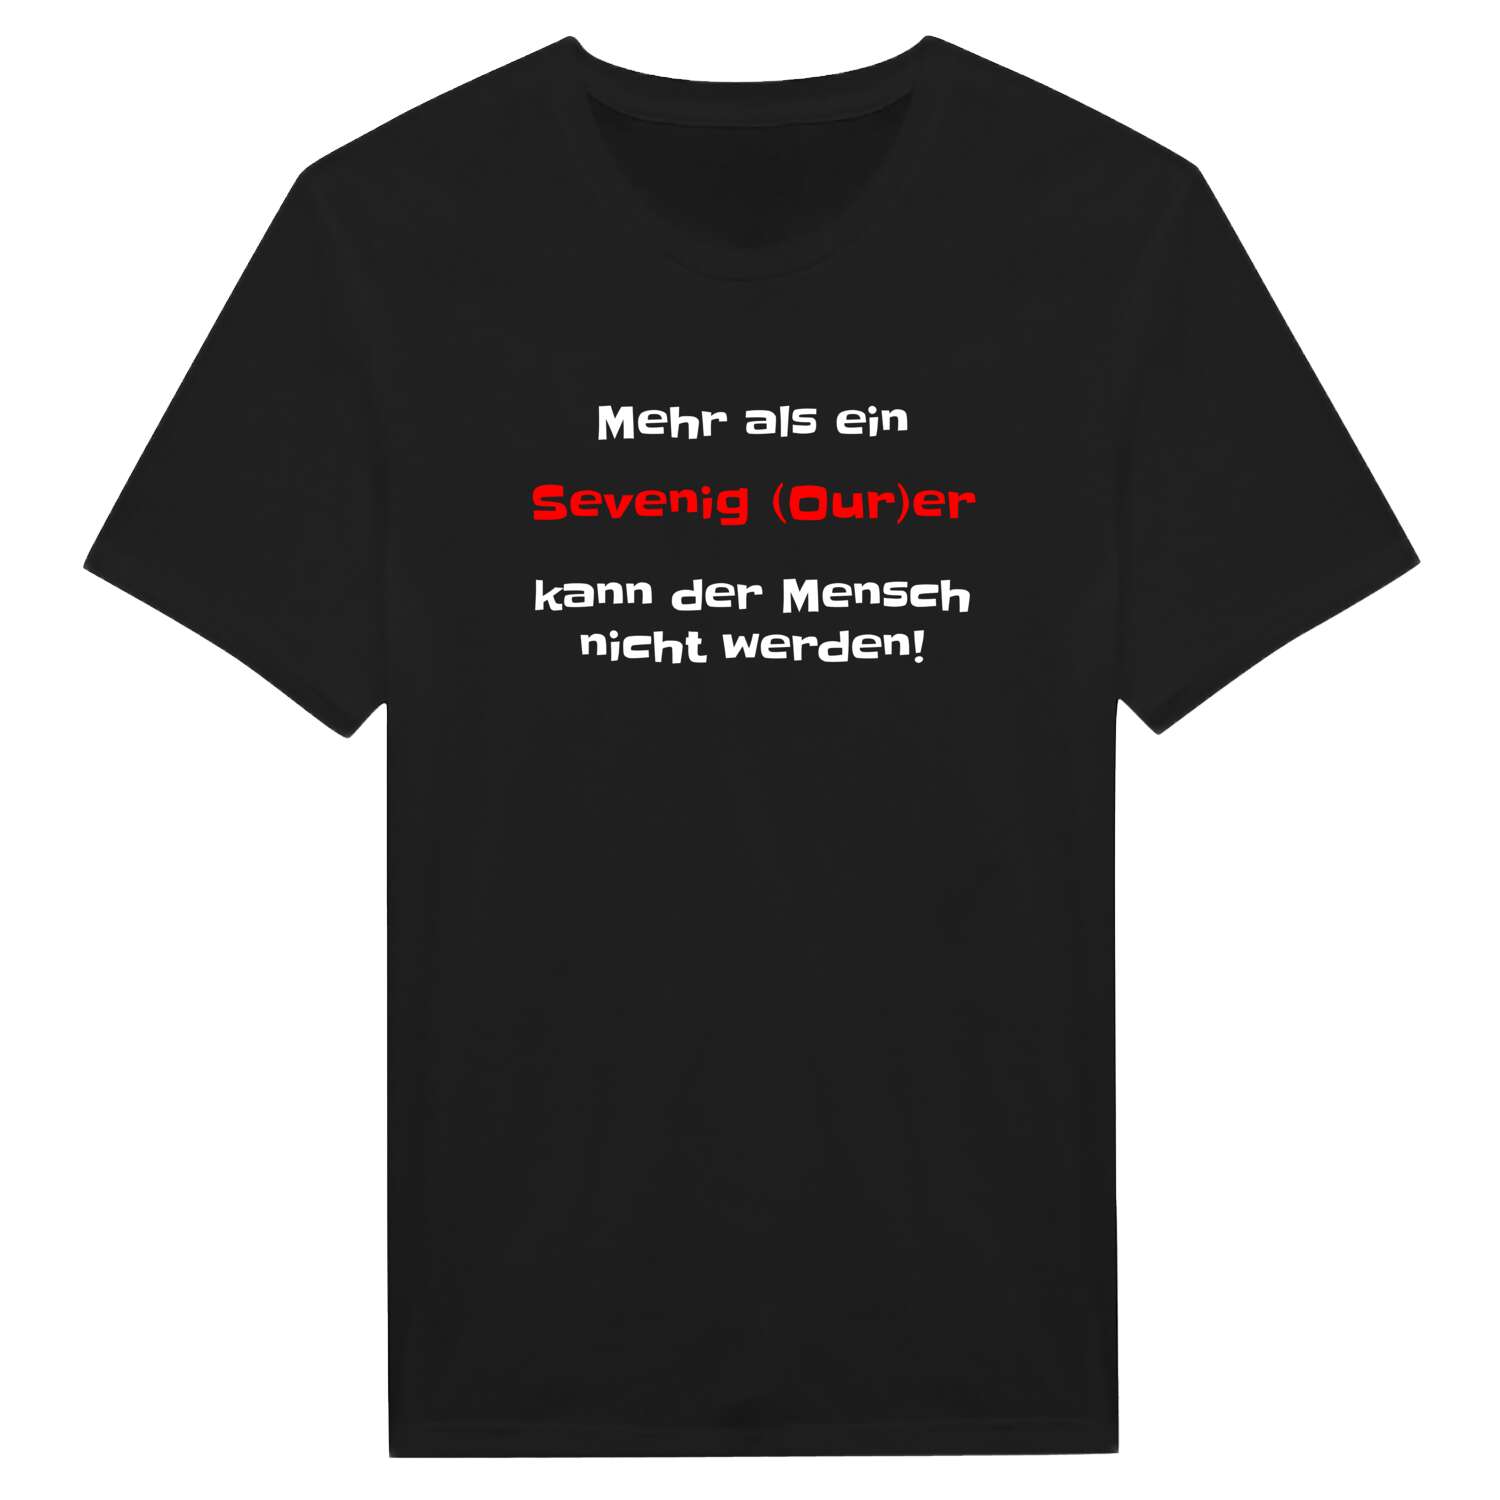 Sevenig (Our) T-Shirt »Mehr als ein«